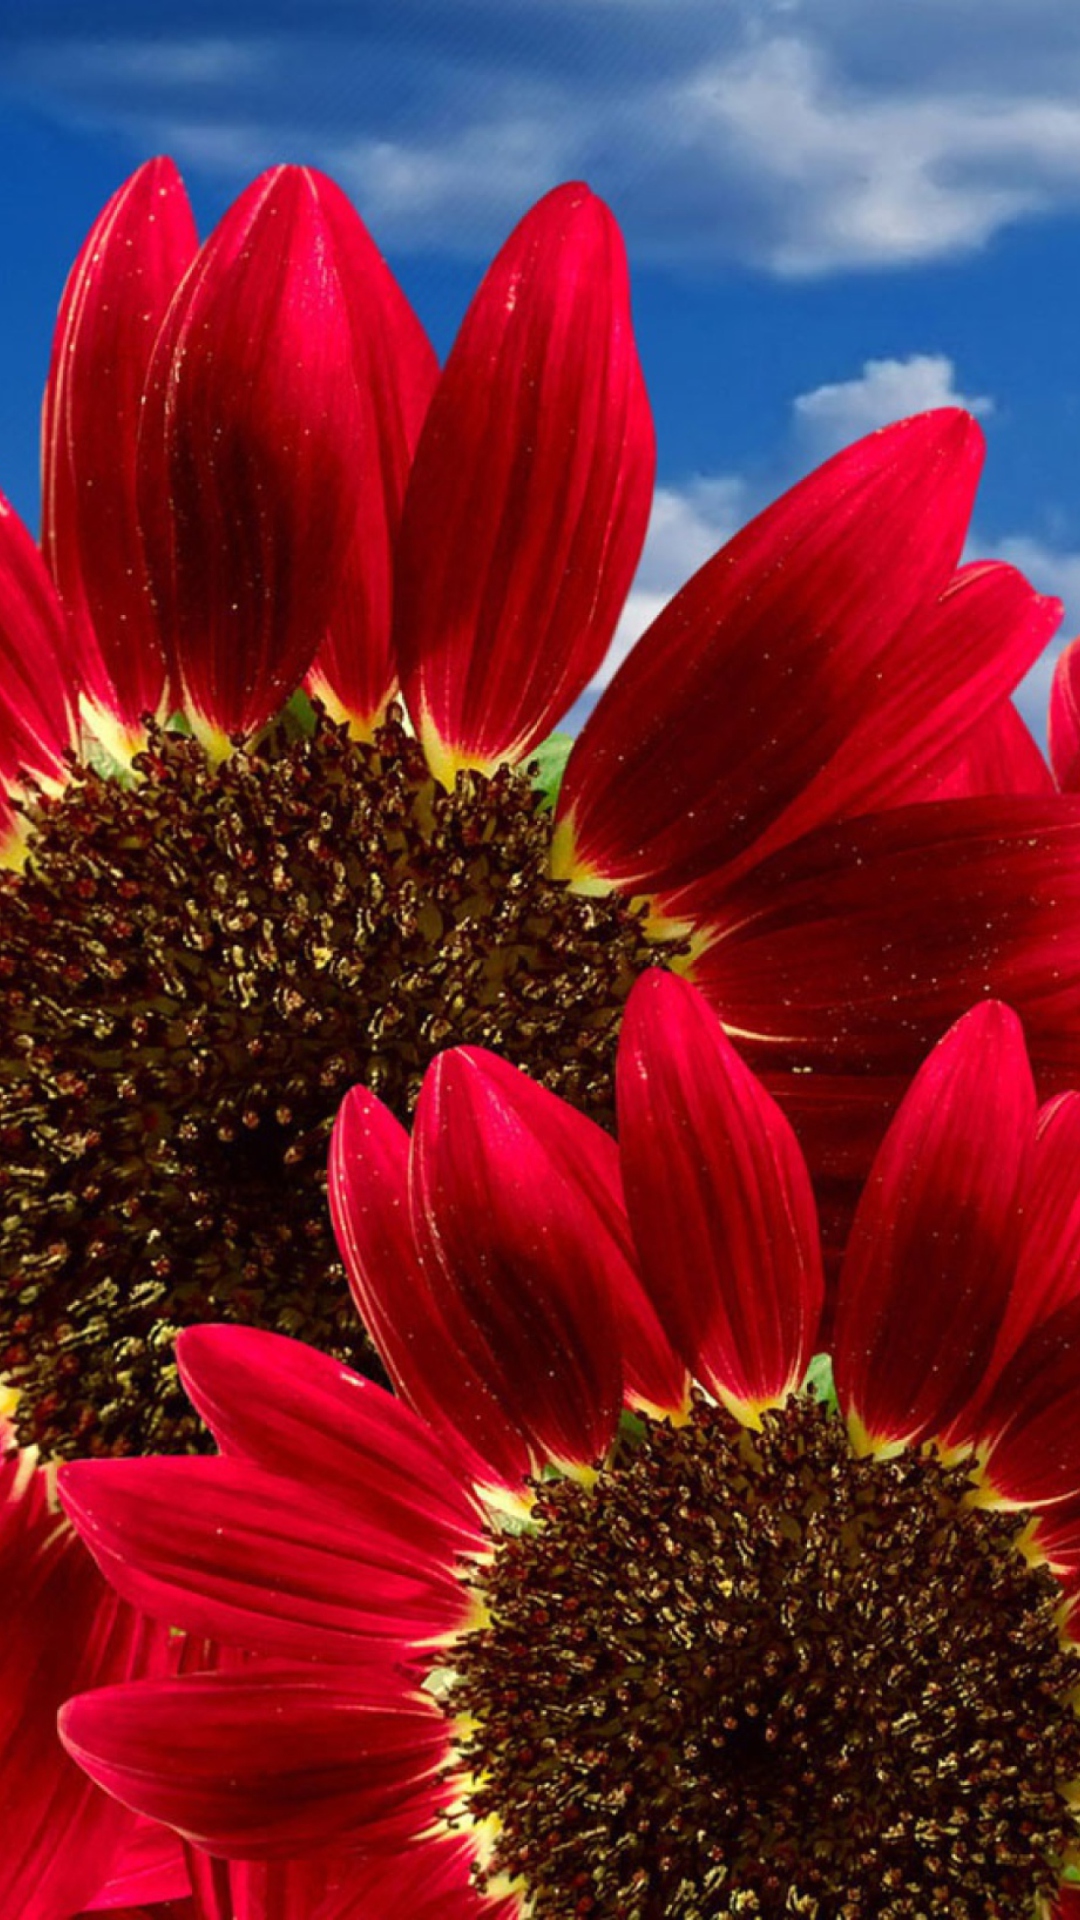 Red Sunflower wallpaper 1080x1920